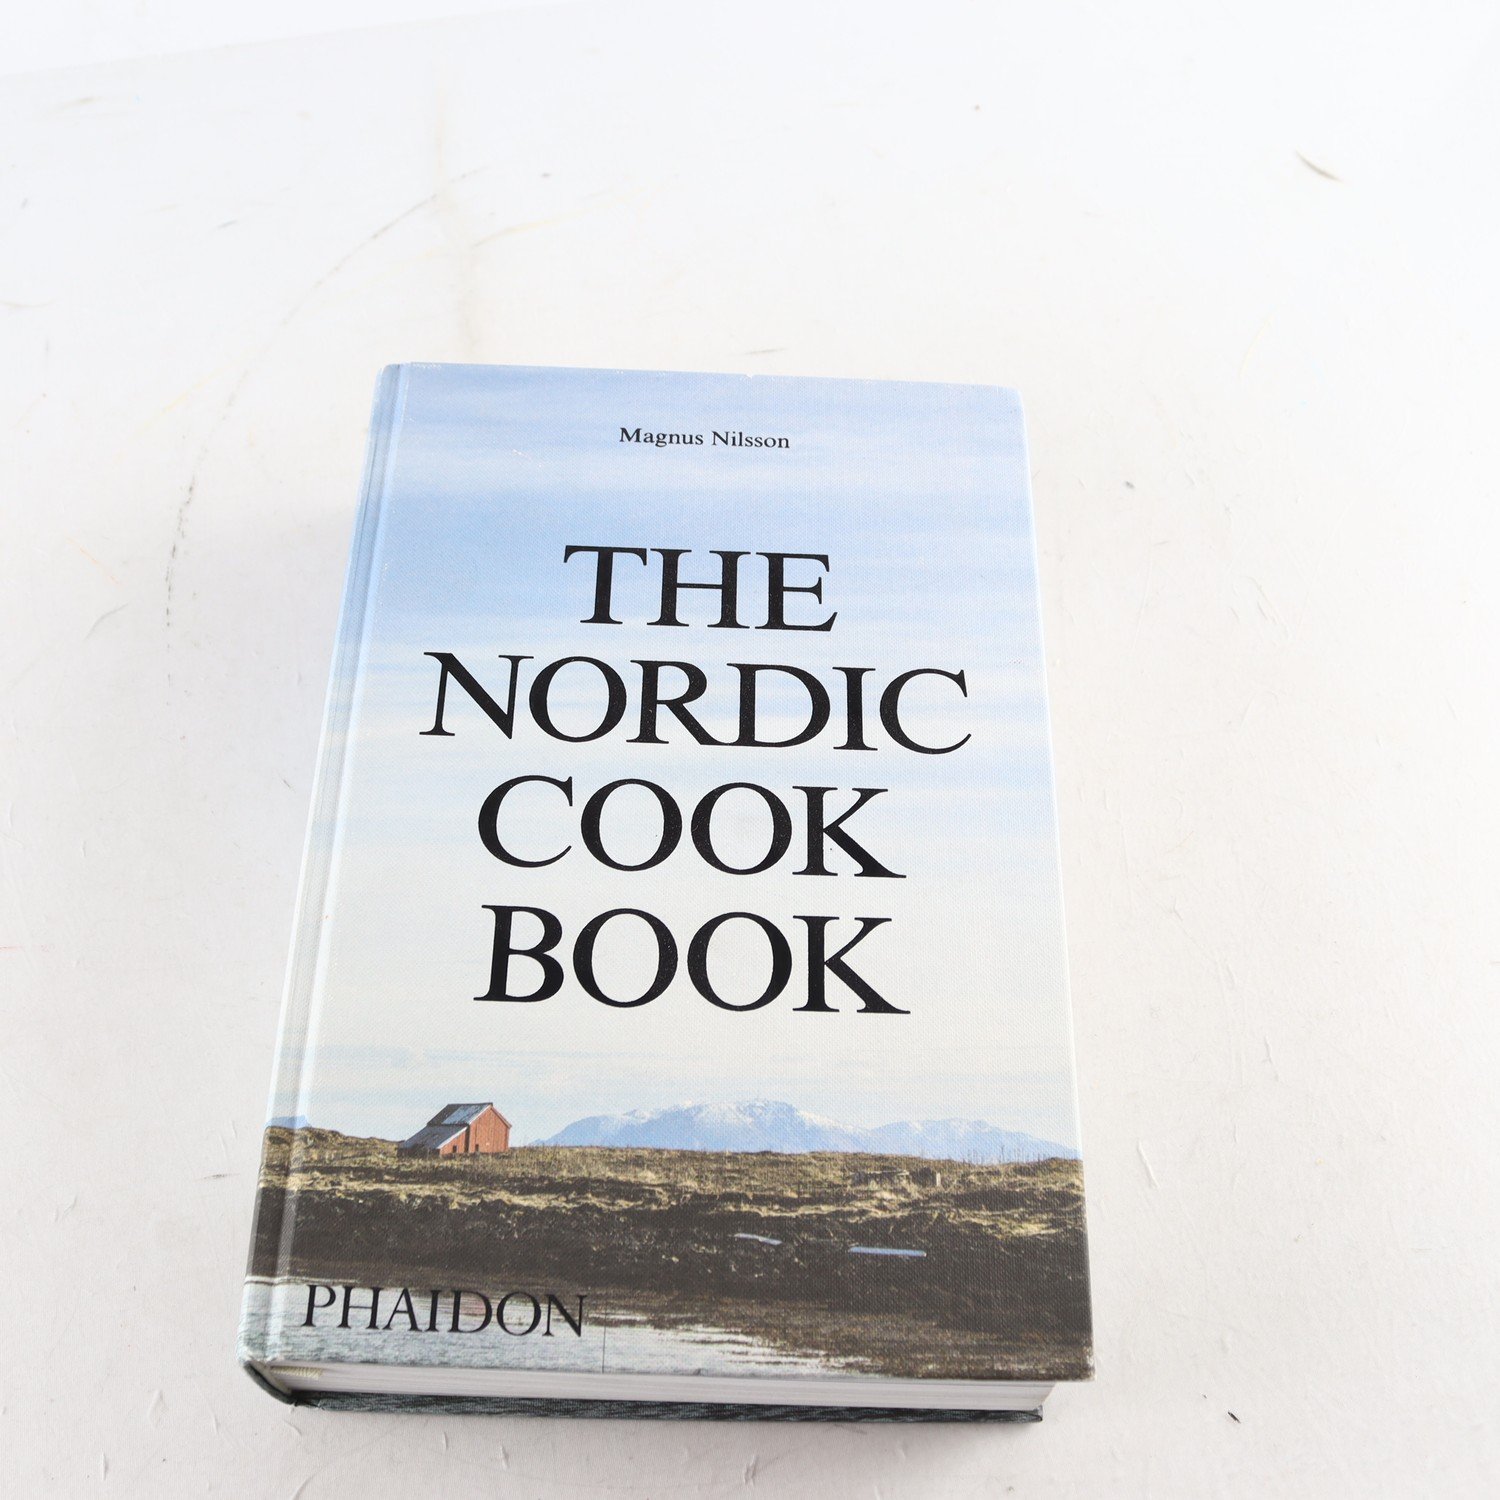 The Nordic Cookbook, Magnus Nilsson